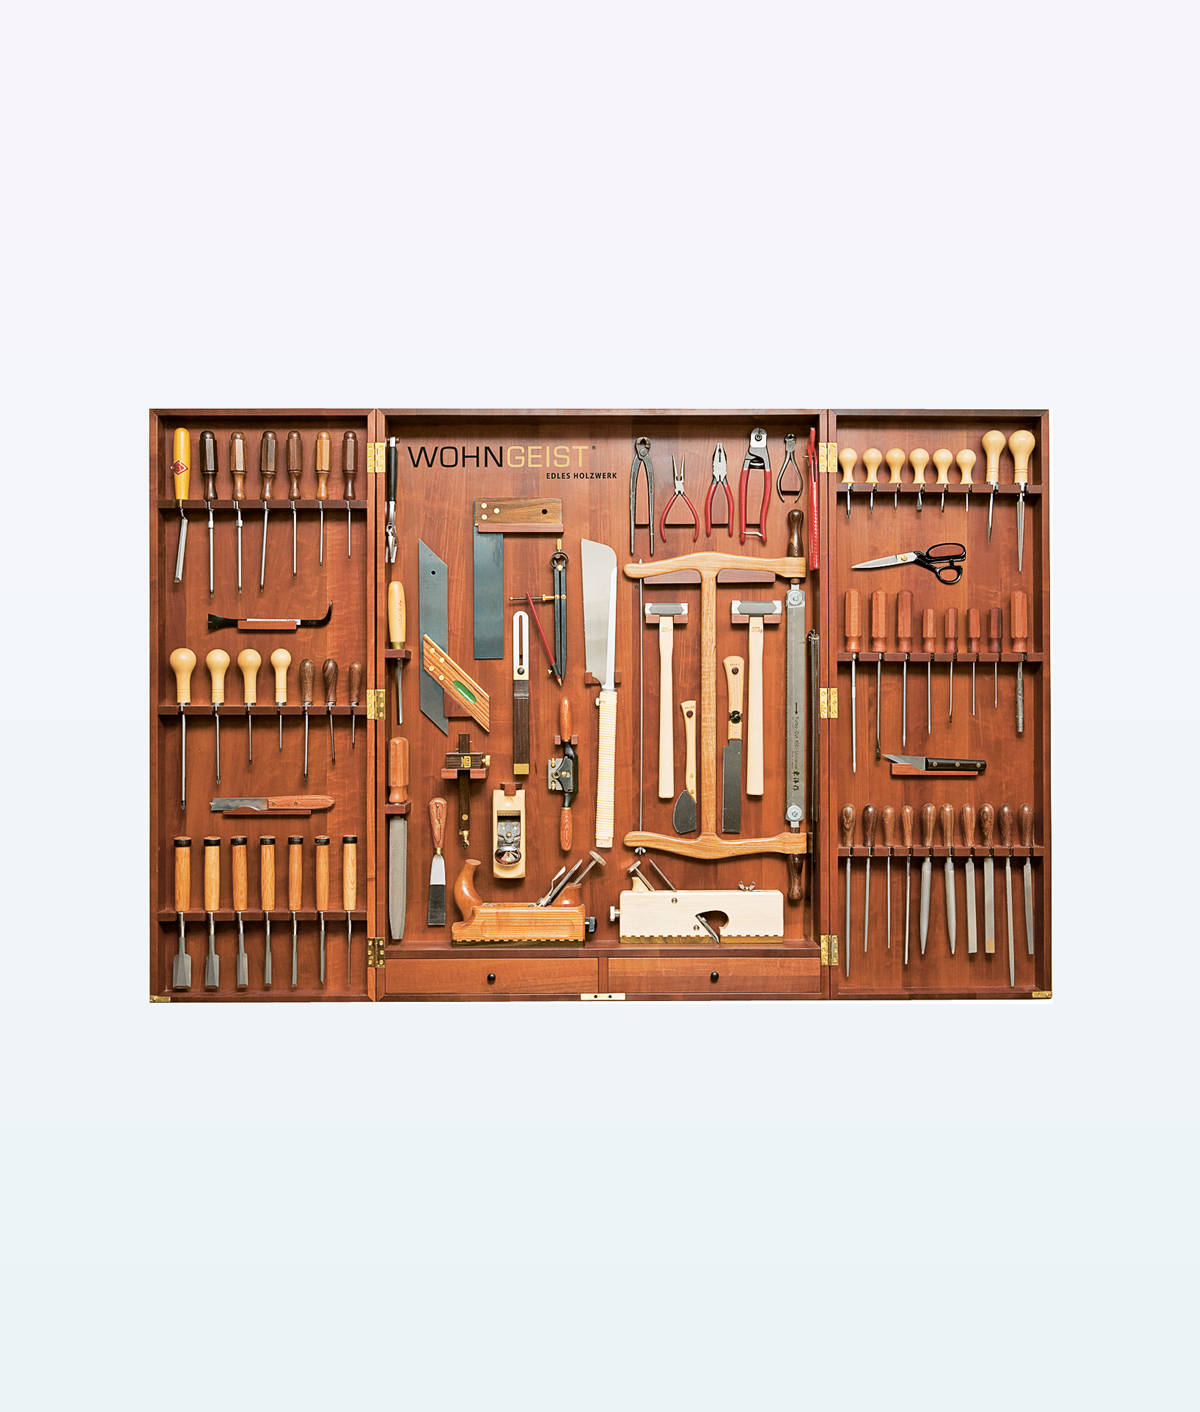 armoire-a-outils-de-luxe-wohngeist